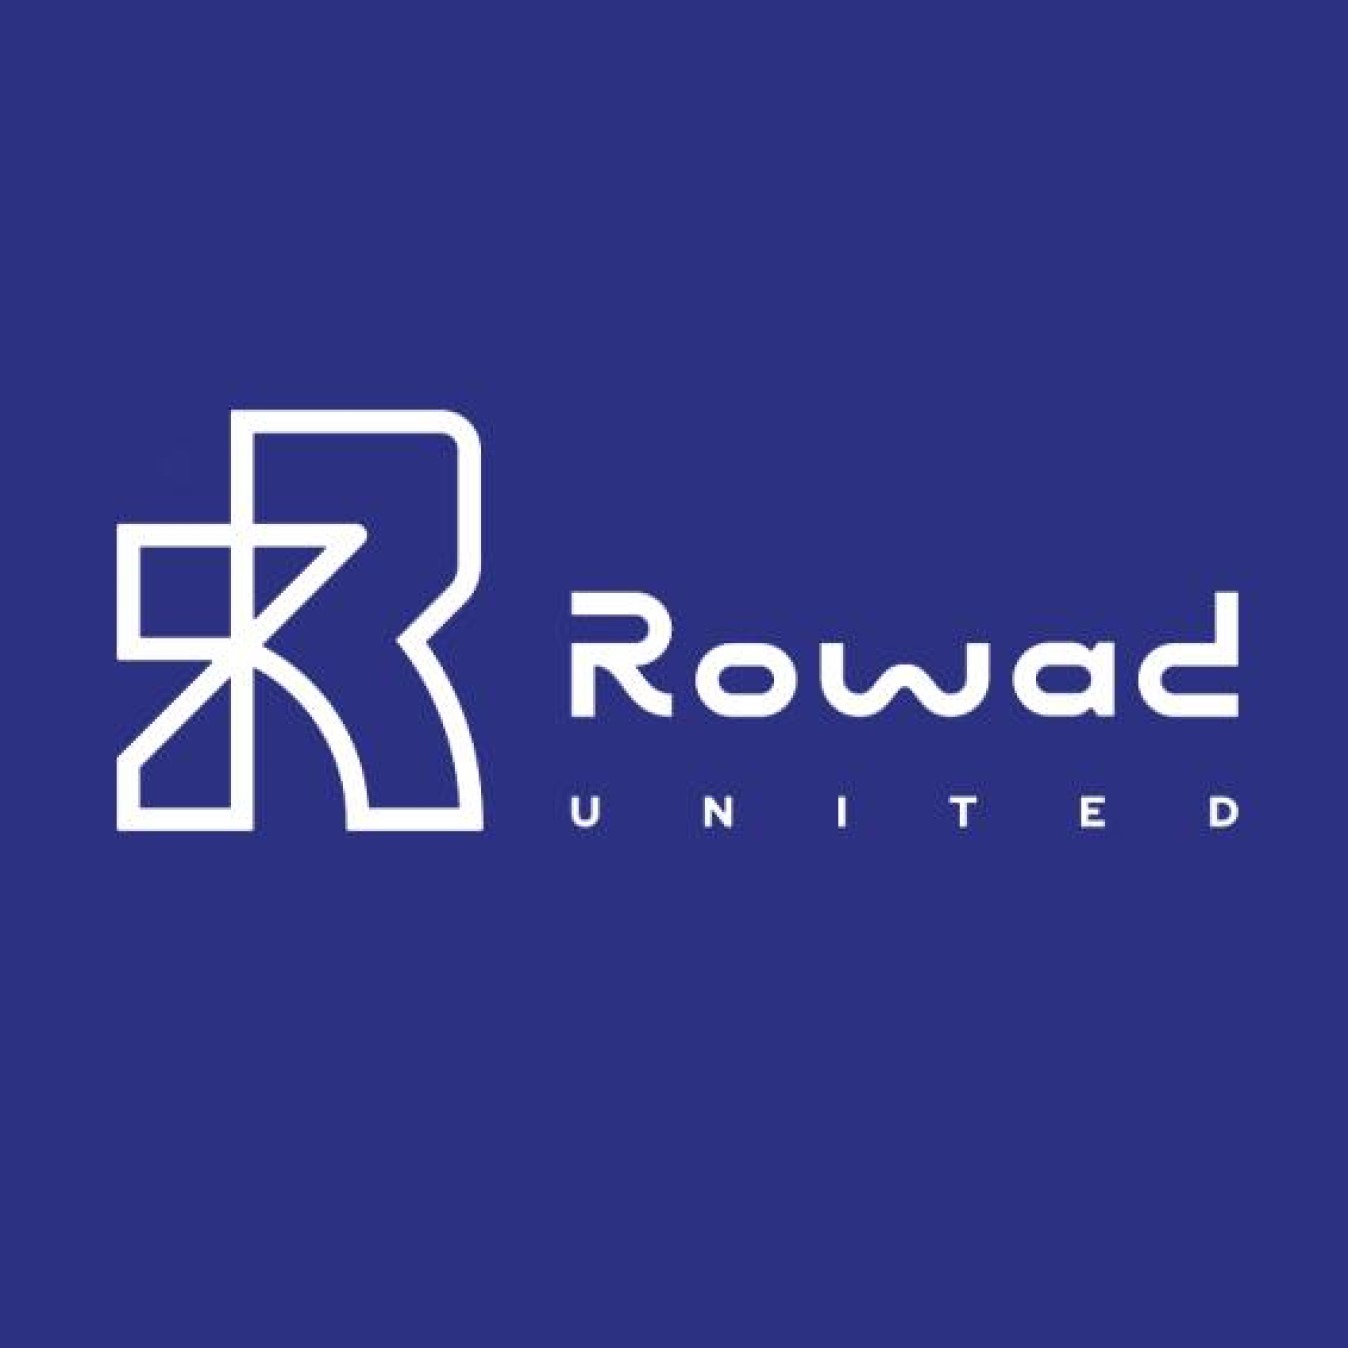 Rowad United